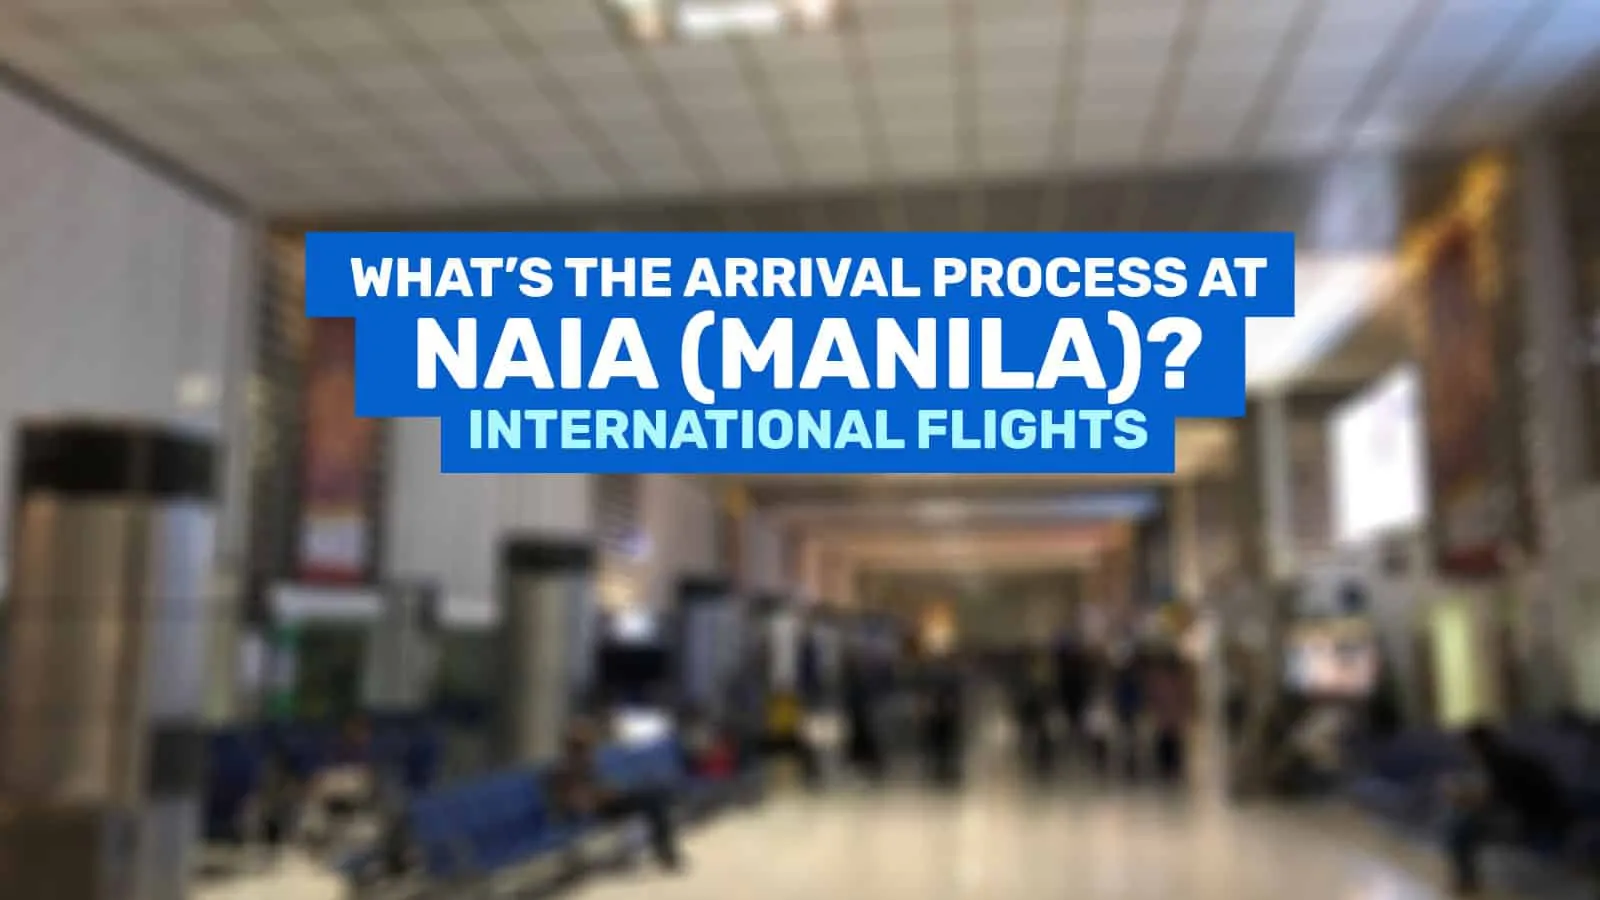 马尼拉机场:国际抵达流程(分步指南)